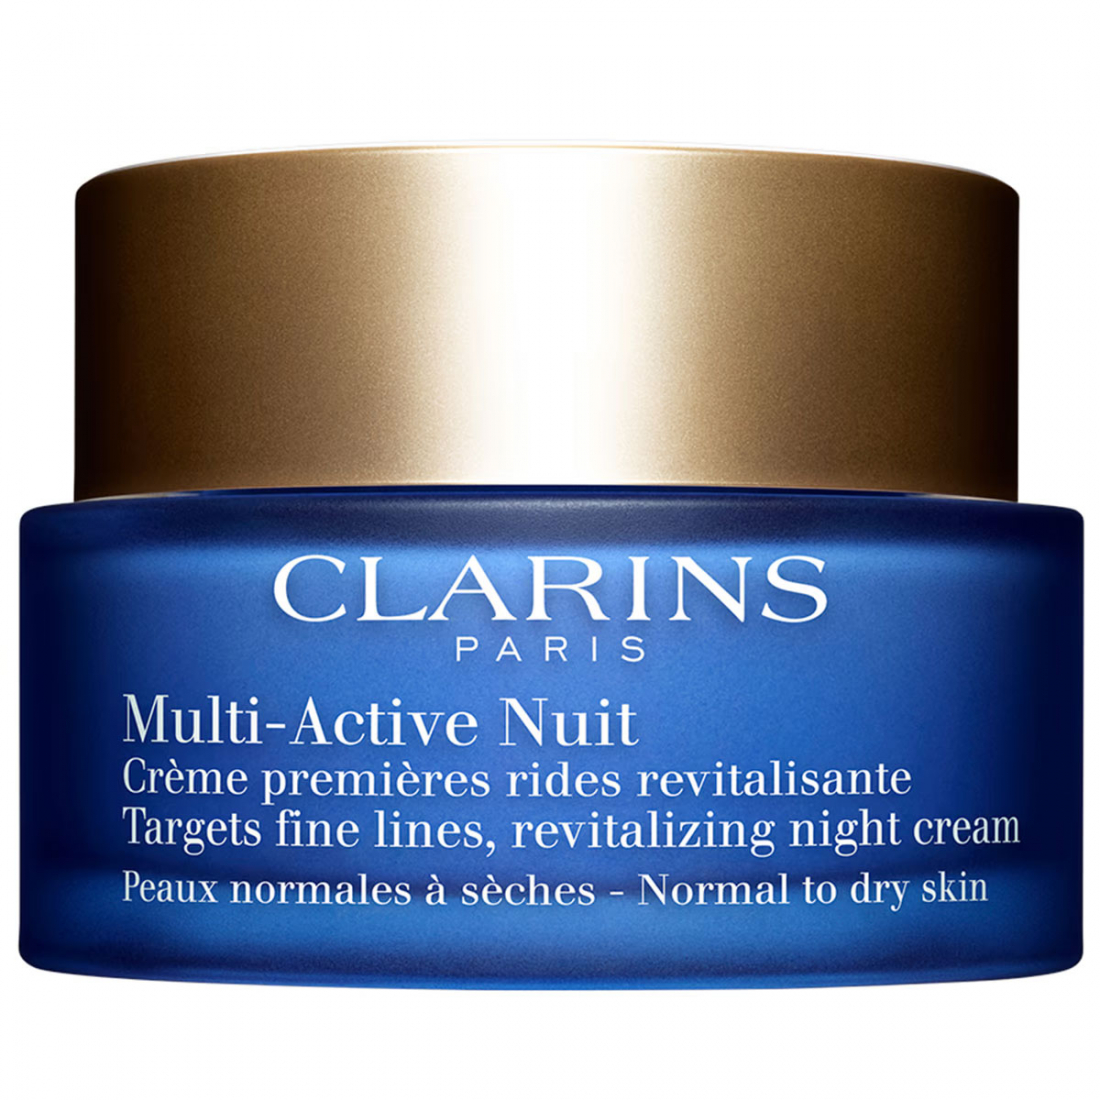 'Multi-Active Nuit' Anti-Aging Night Cream - 50 ml